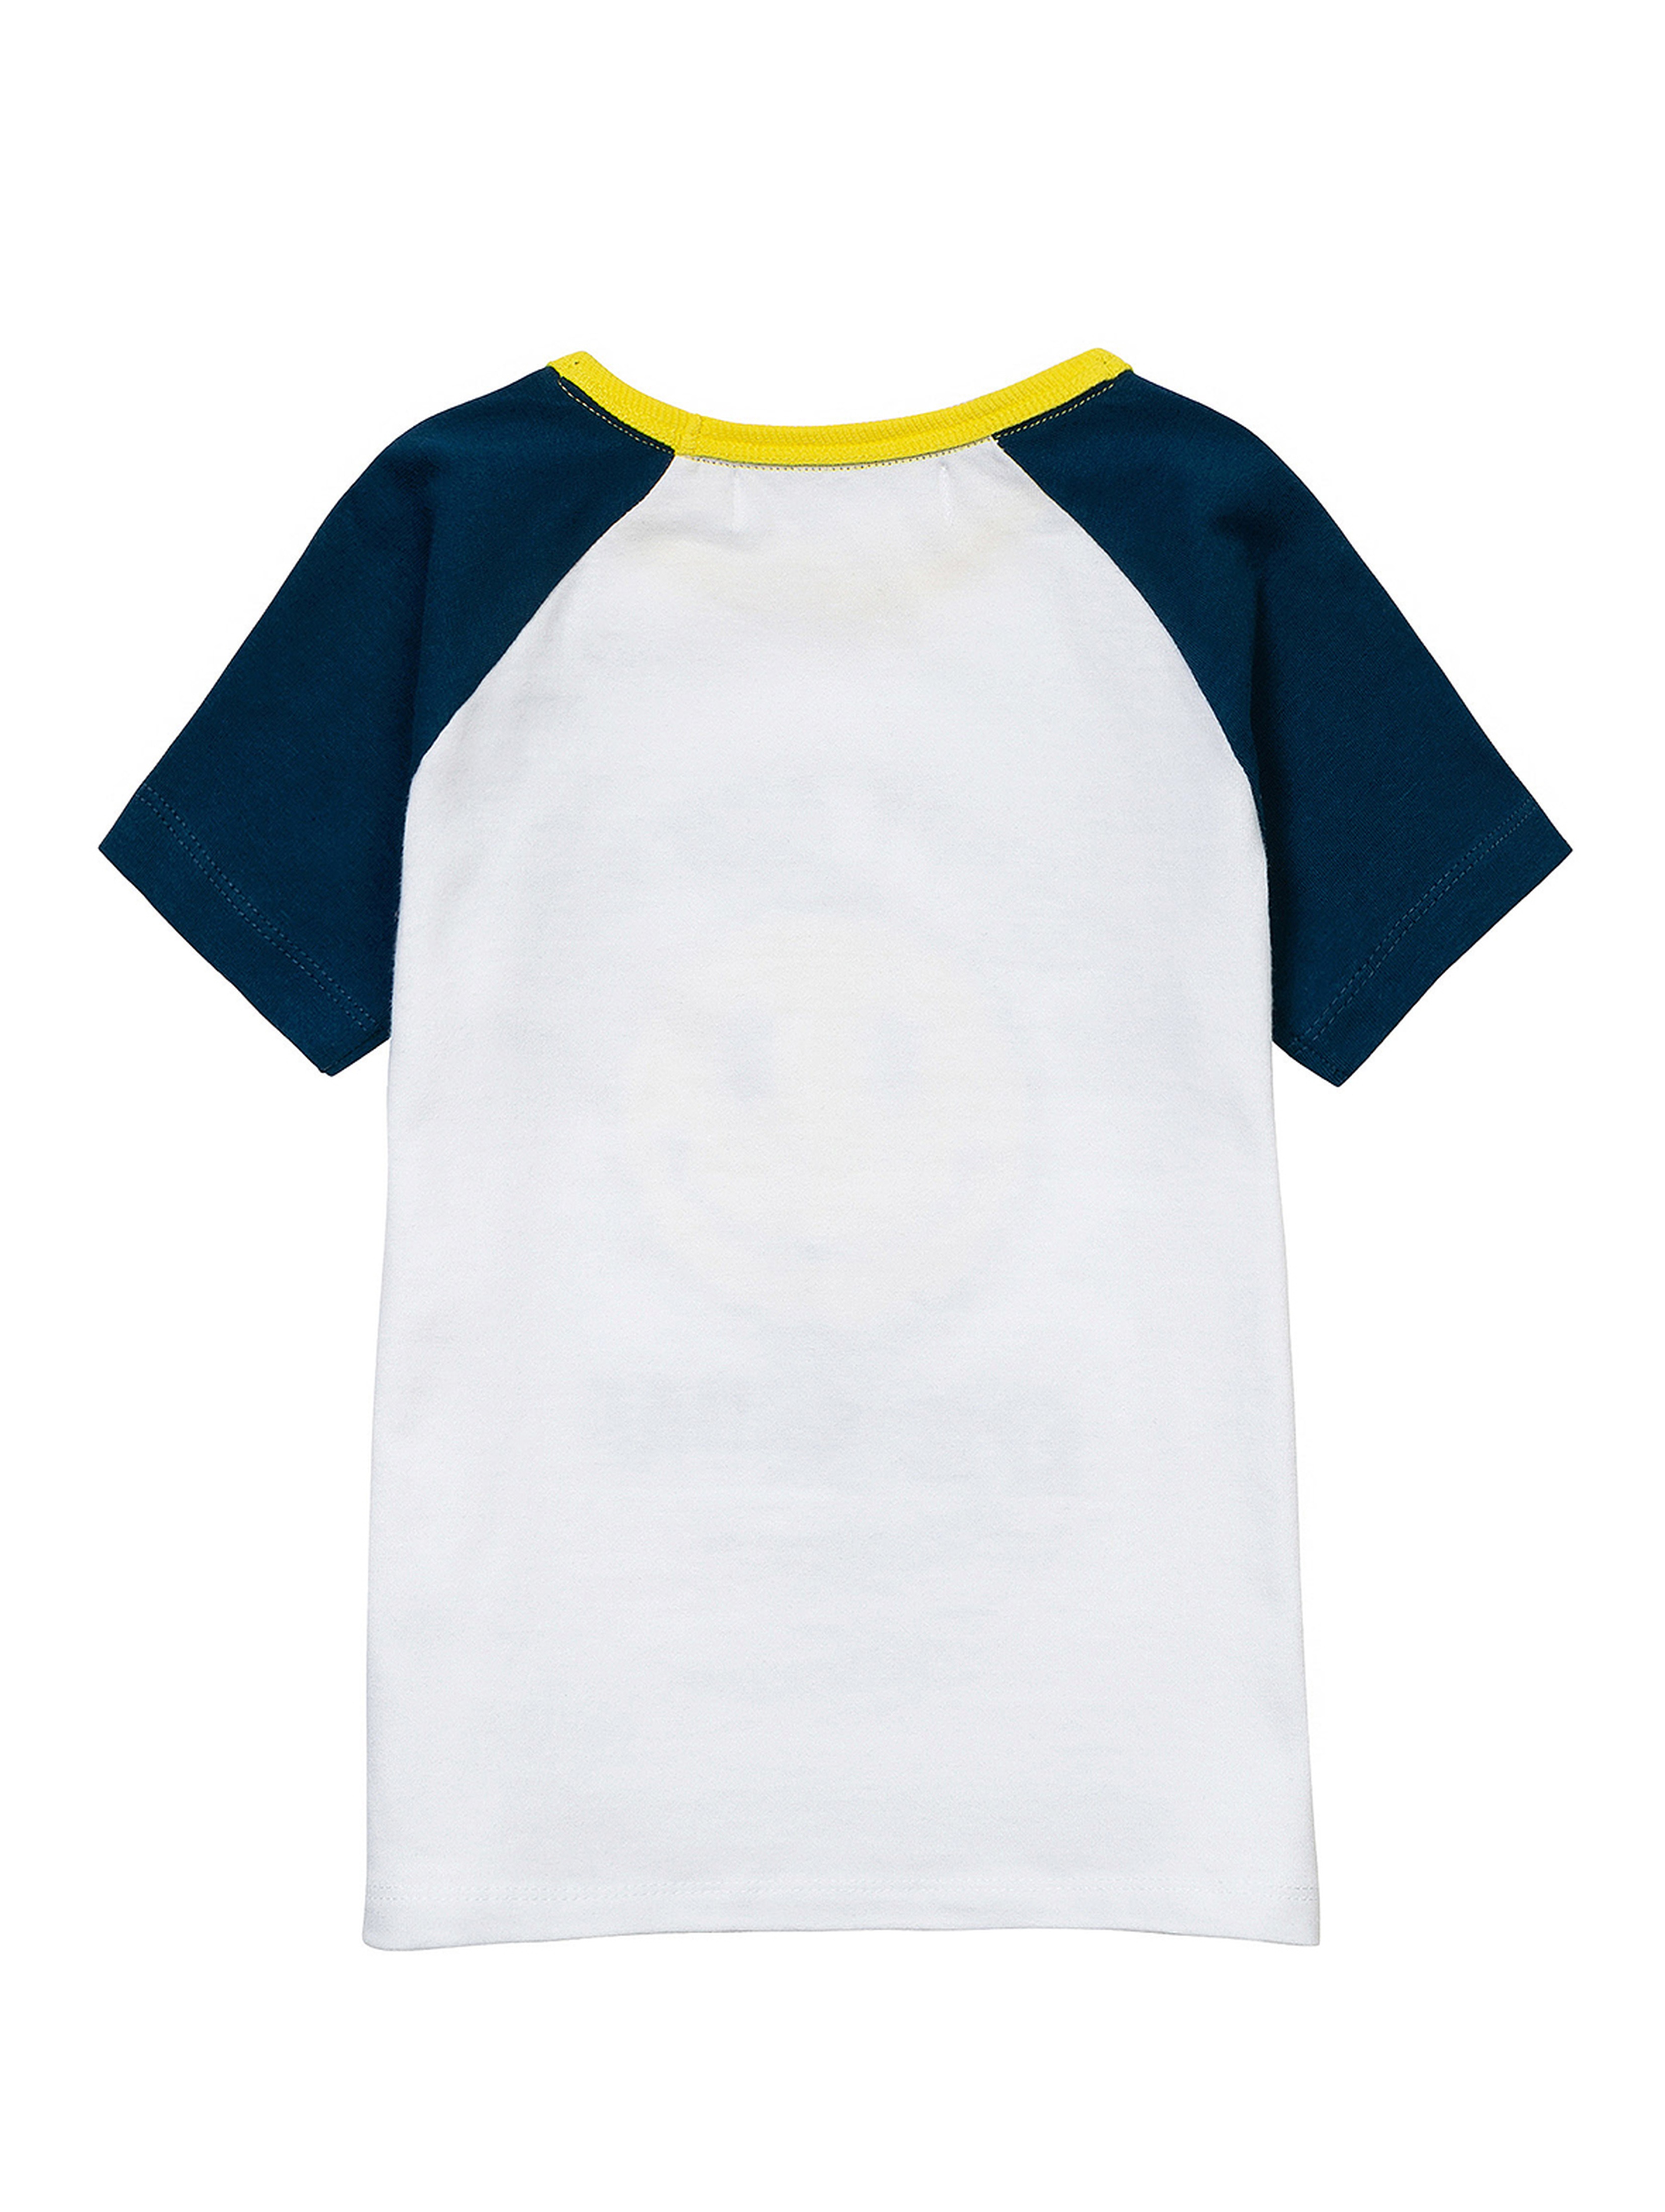 Bawełniany t-shirt dla niemowlaka z nadrukiem